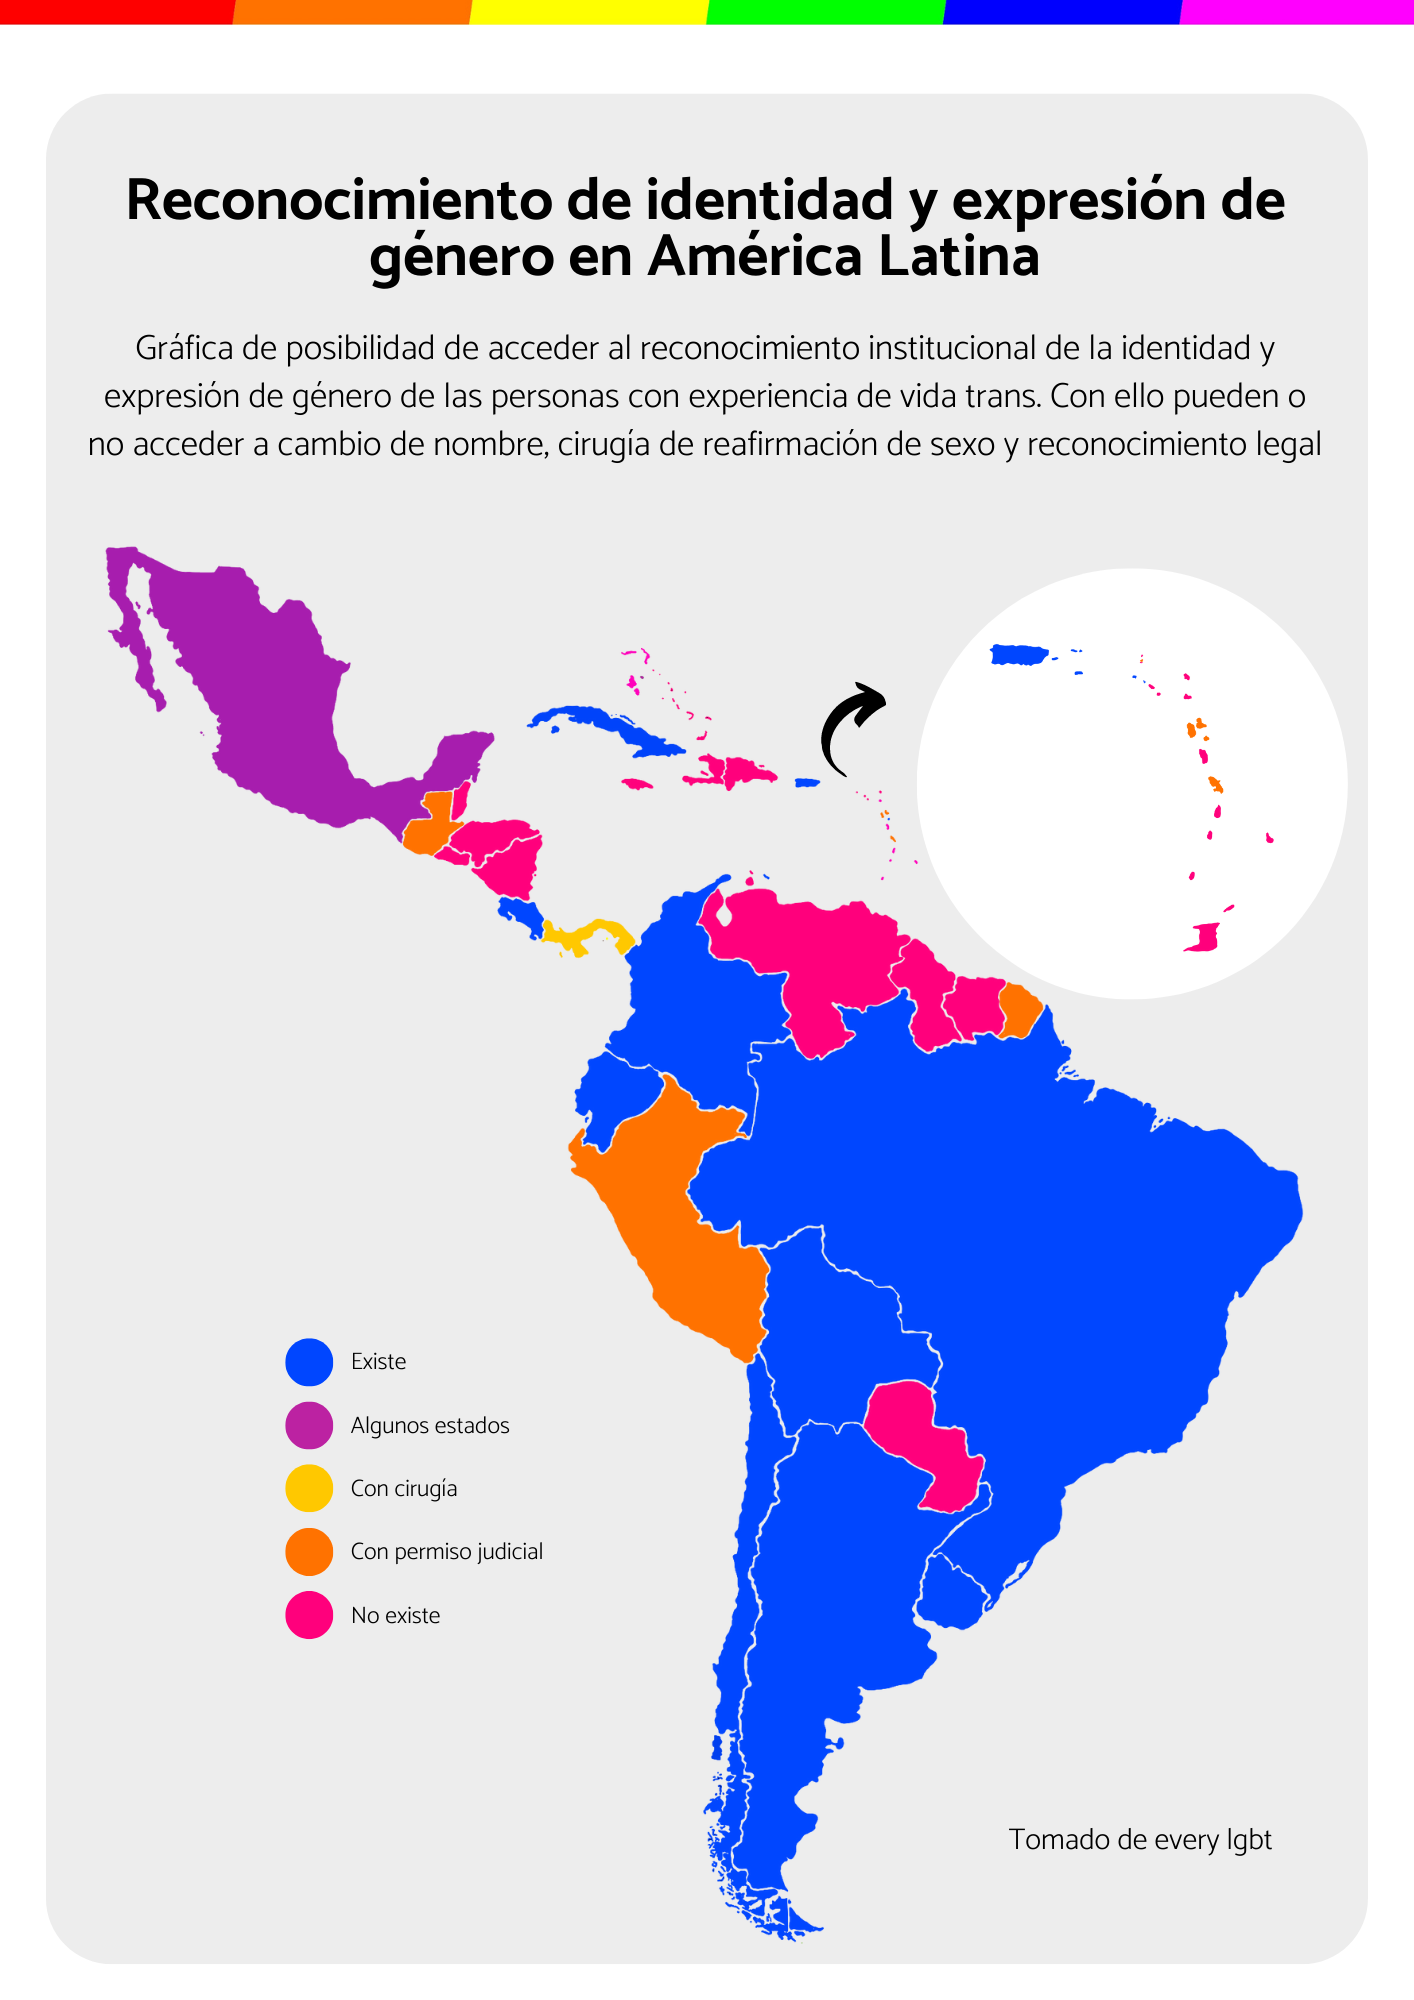 Reconocimiento de la identidad y expresión de género en América Latina